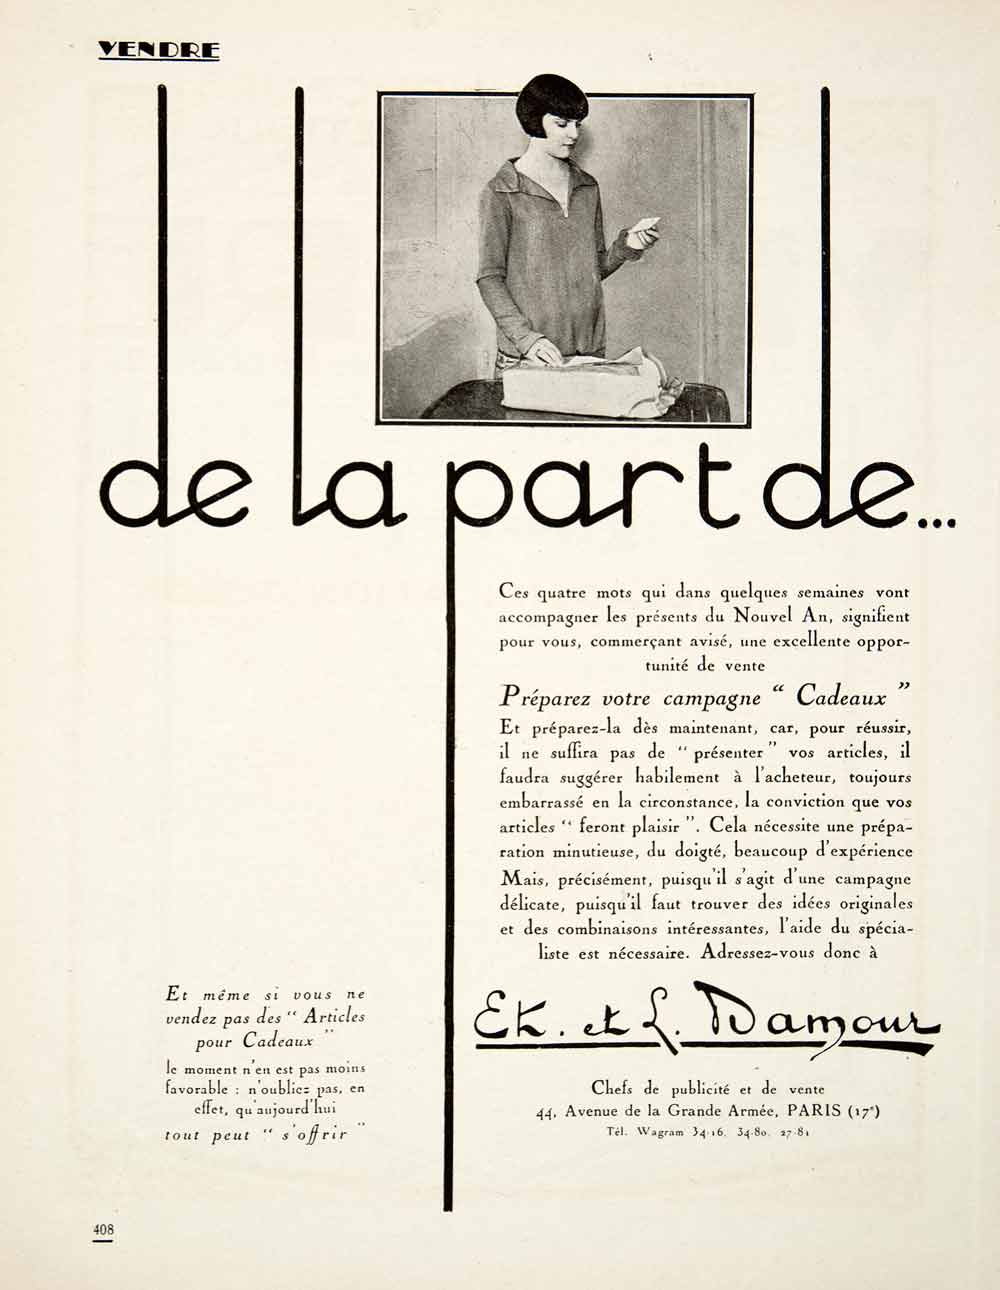 1925 Ad Publicity Experts Etienne Leon Damour 44 Avenue Grande Armee Paris VEN4